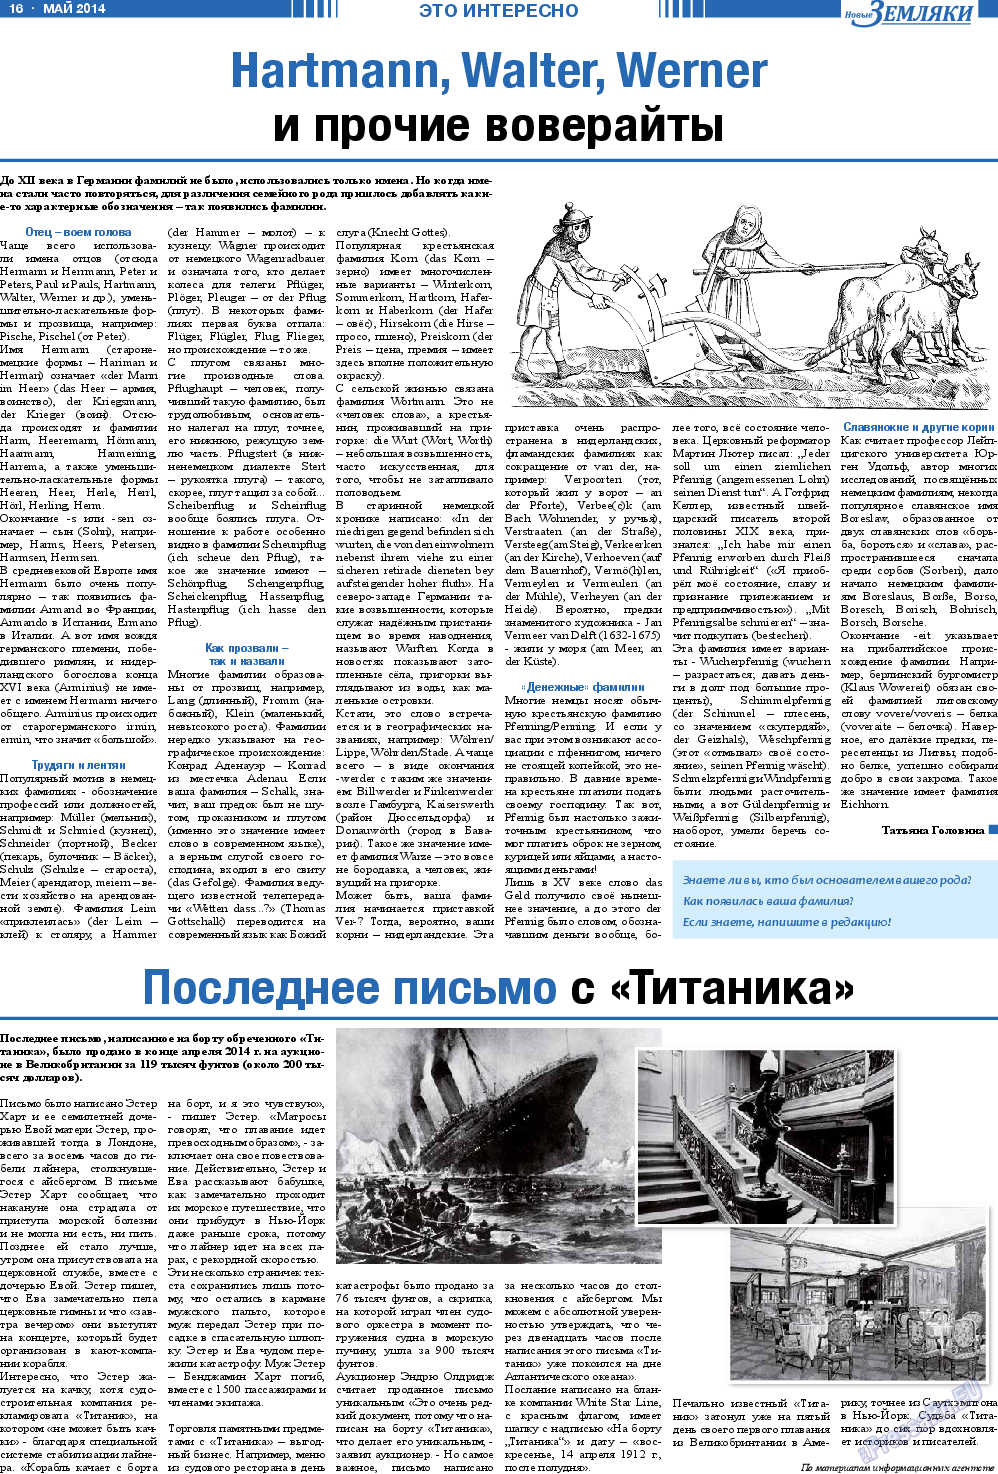 Новые Земляки, газета. 2014 №5 стр.16